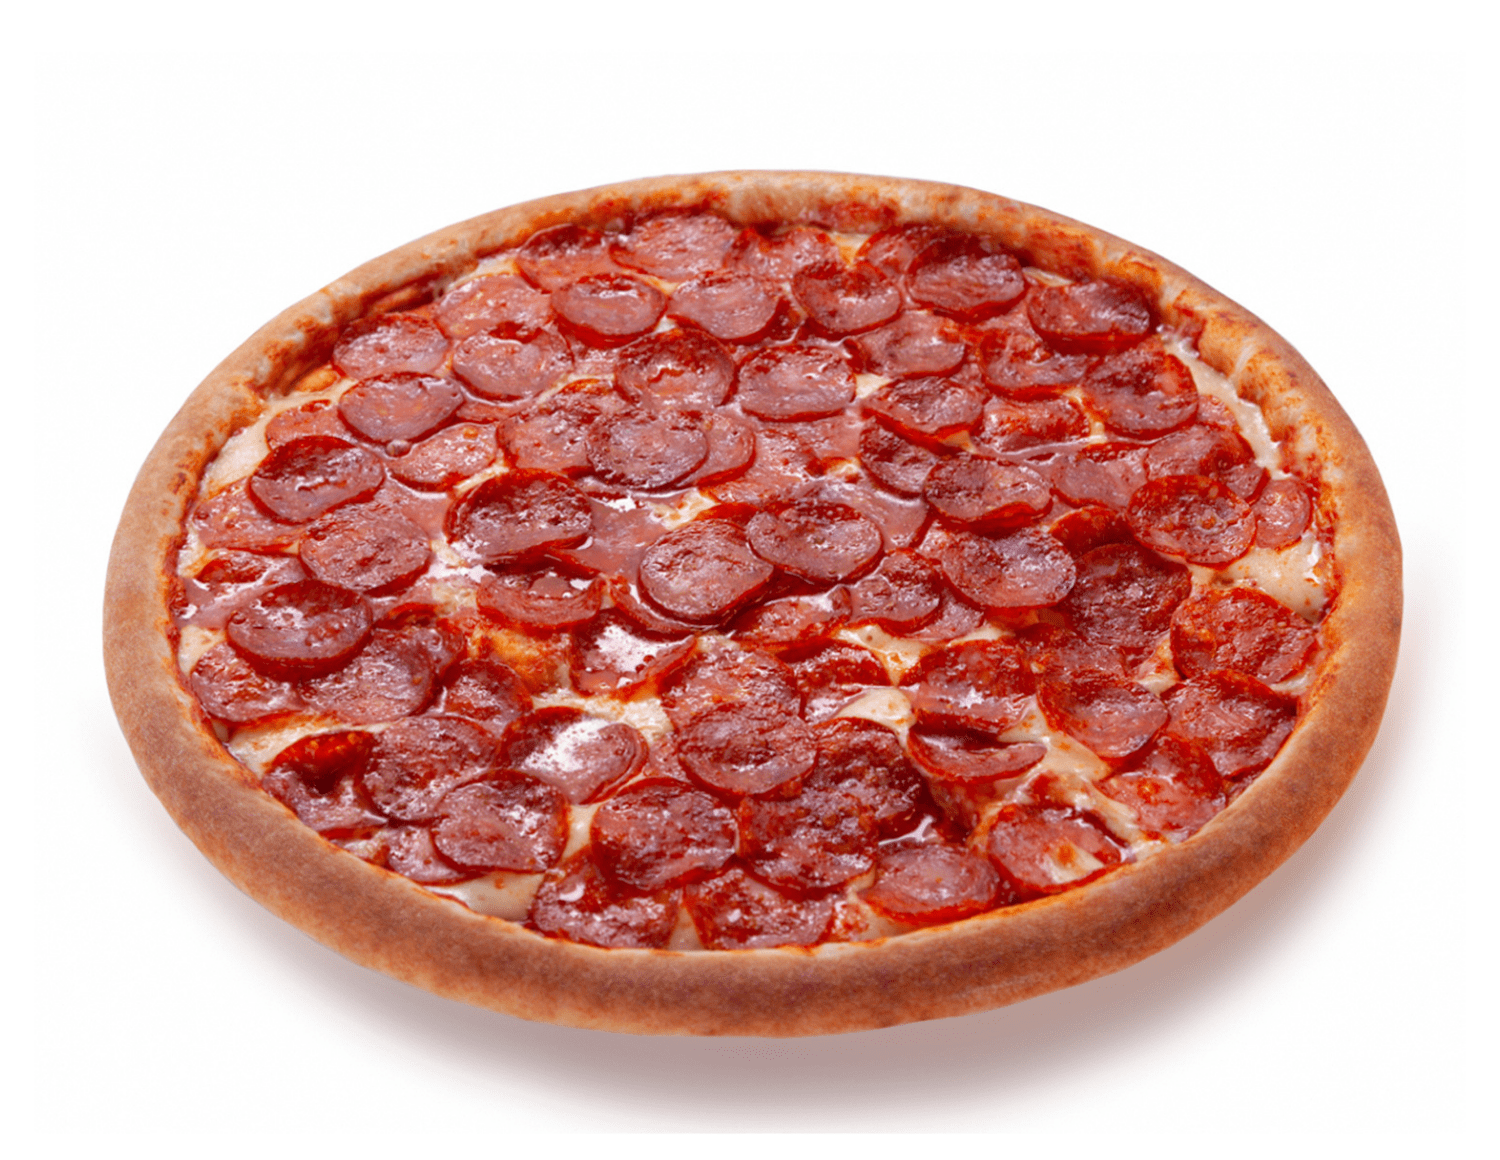 какую колбасу положить в пиццу пепперони в домашних условиях фото 9